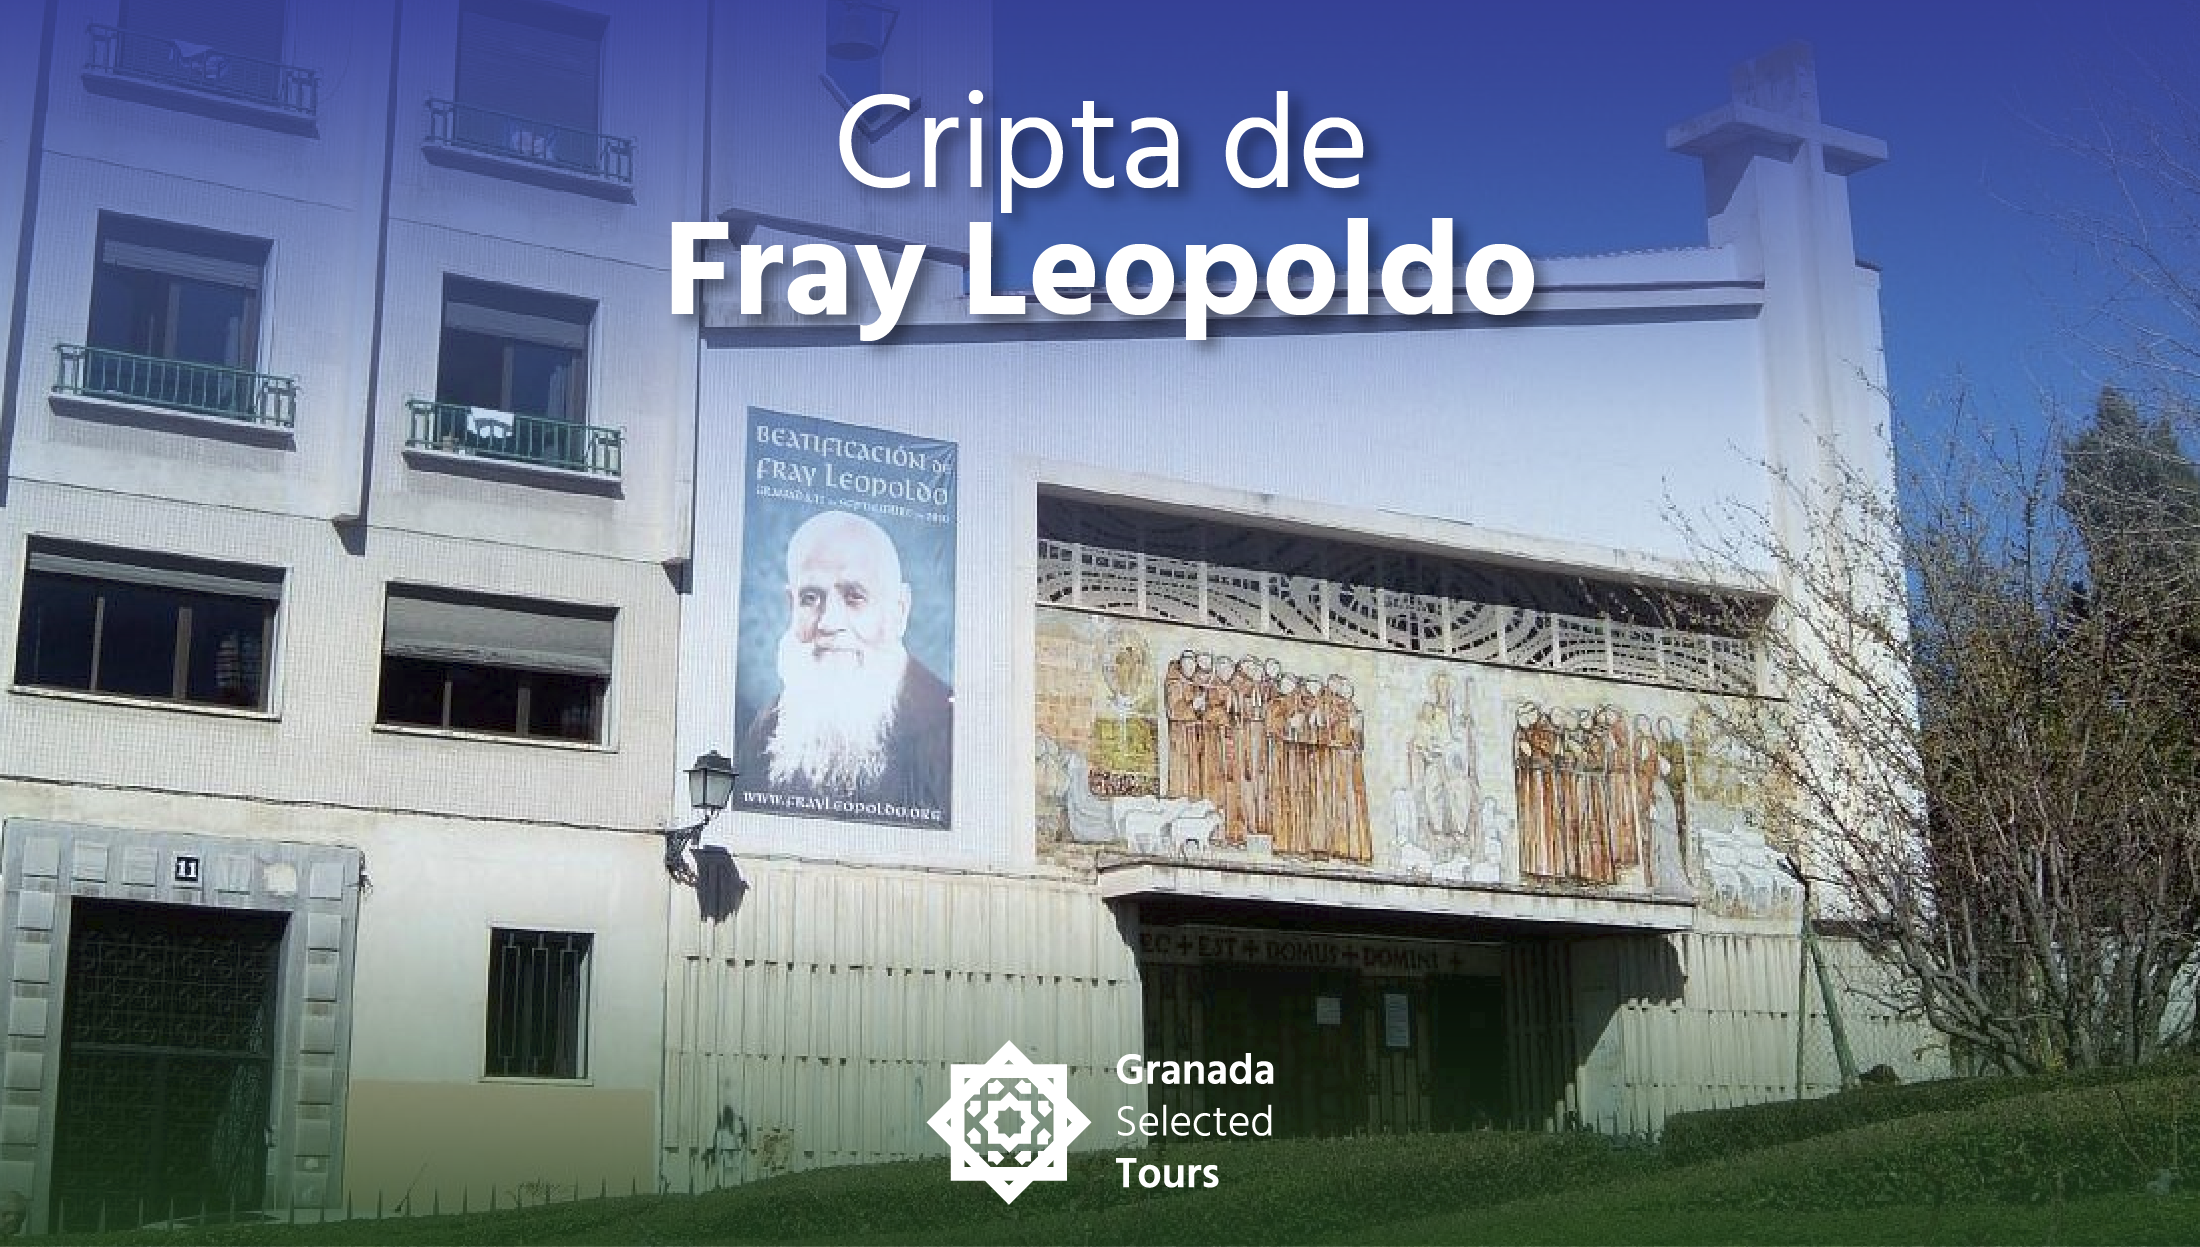 Cripta de Fray Leopoldo